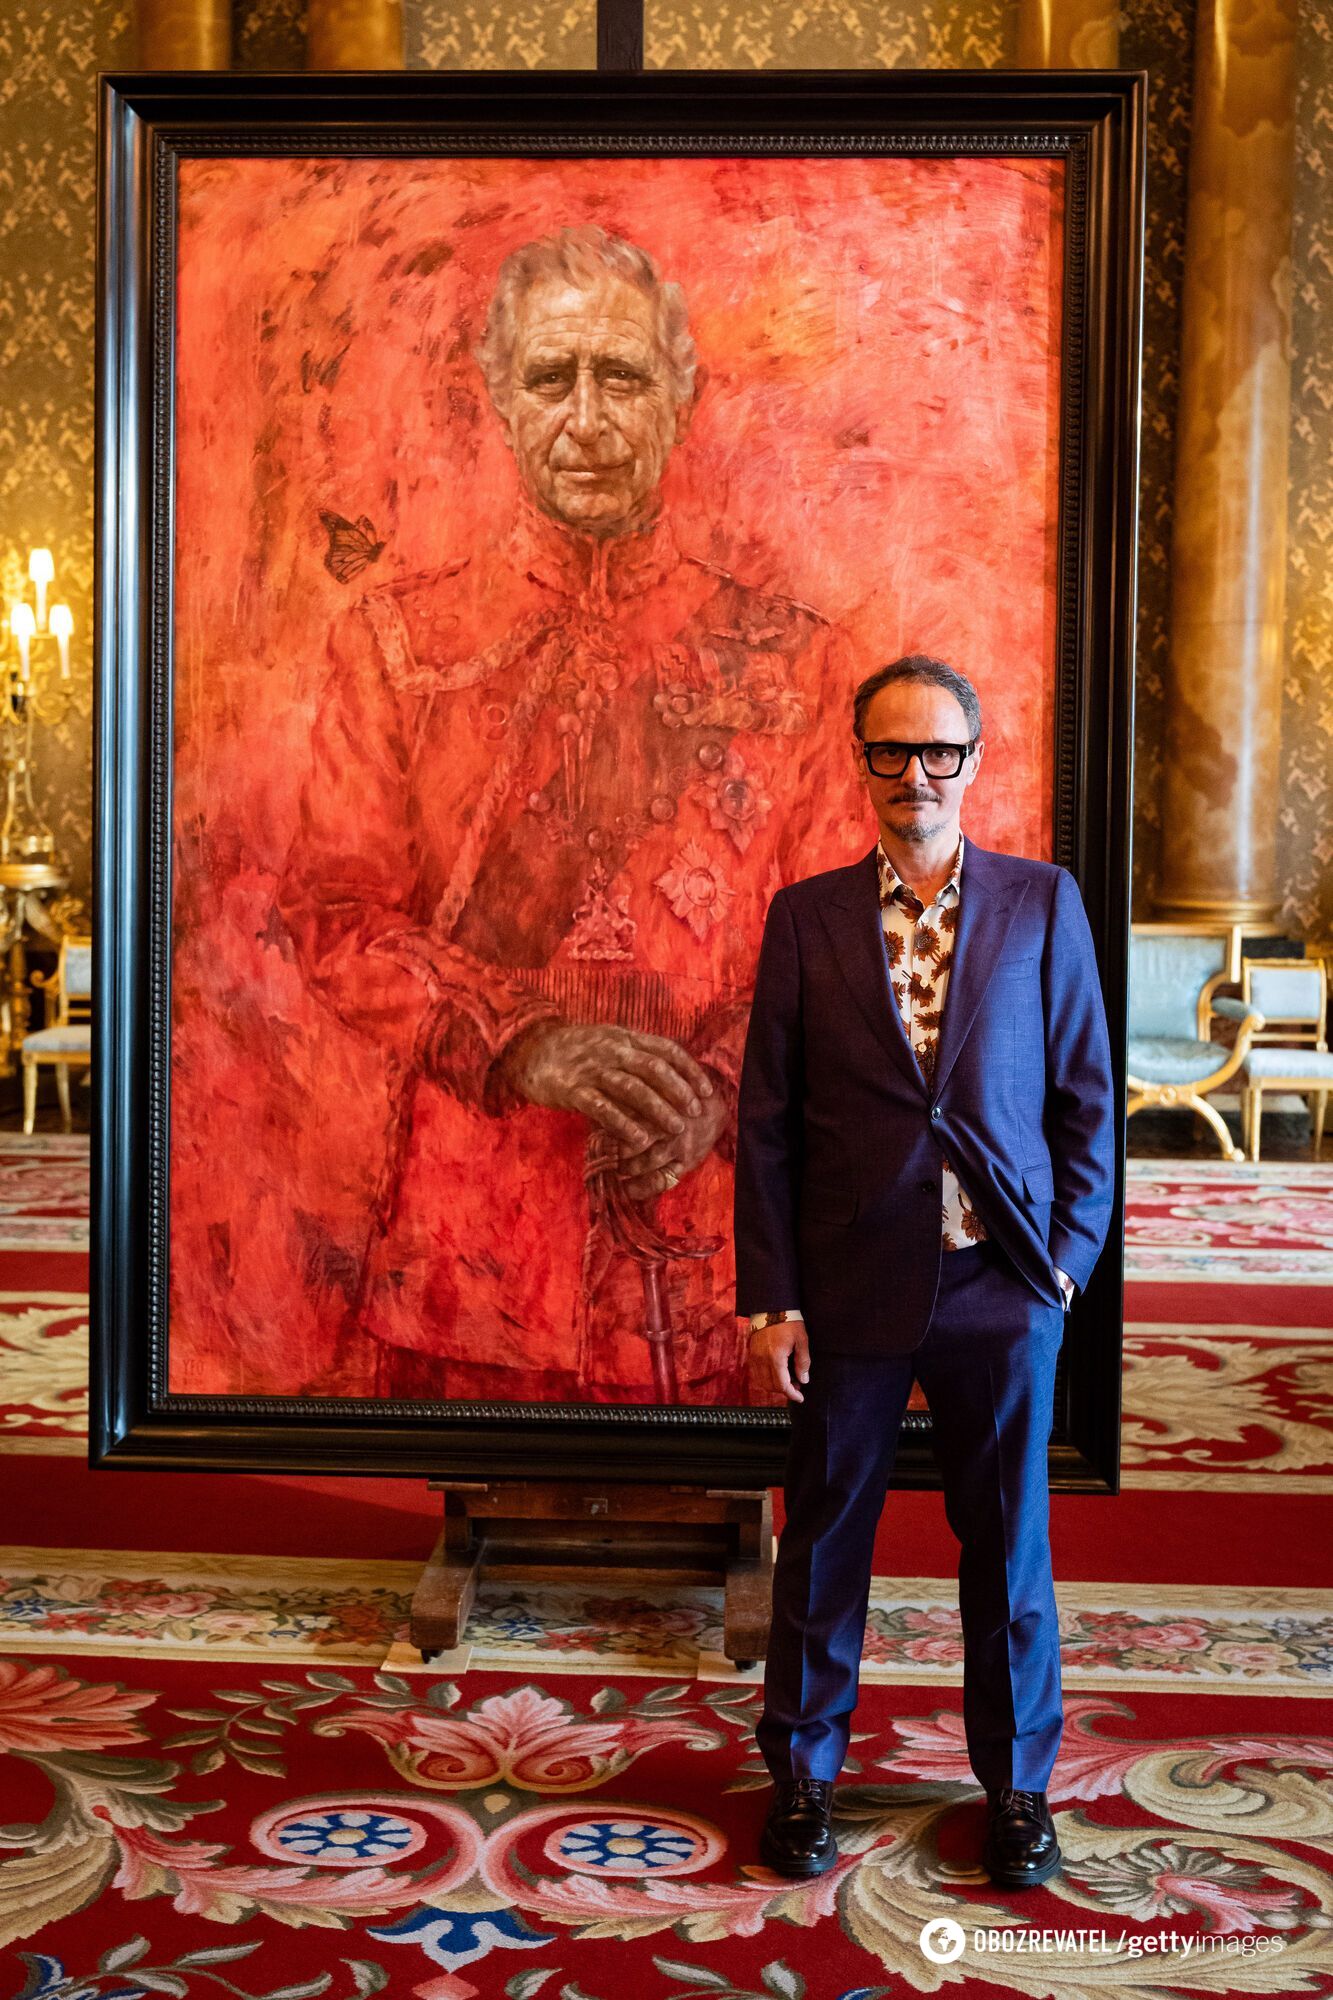 Jak wygląda oficjalny portret króla Wielkiej Brytanii Karola?